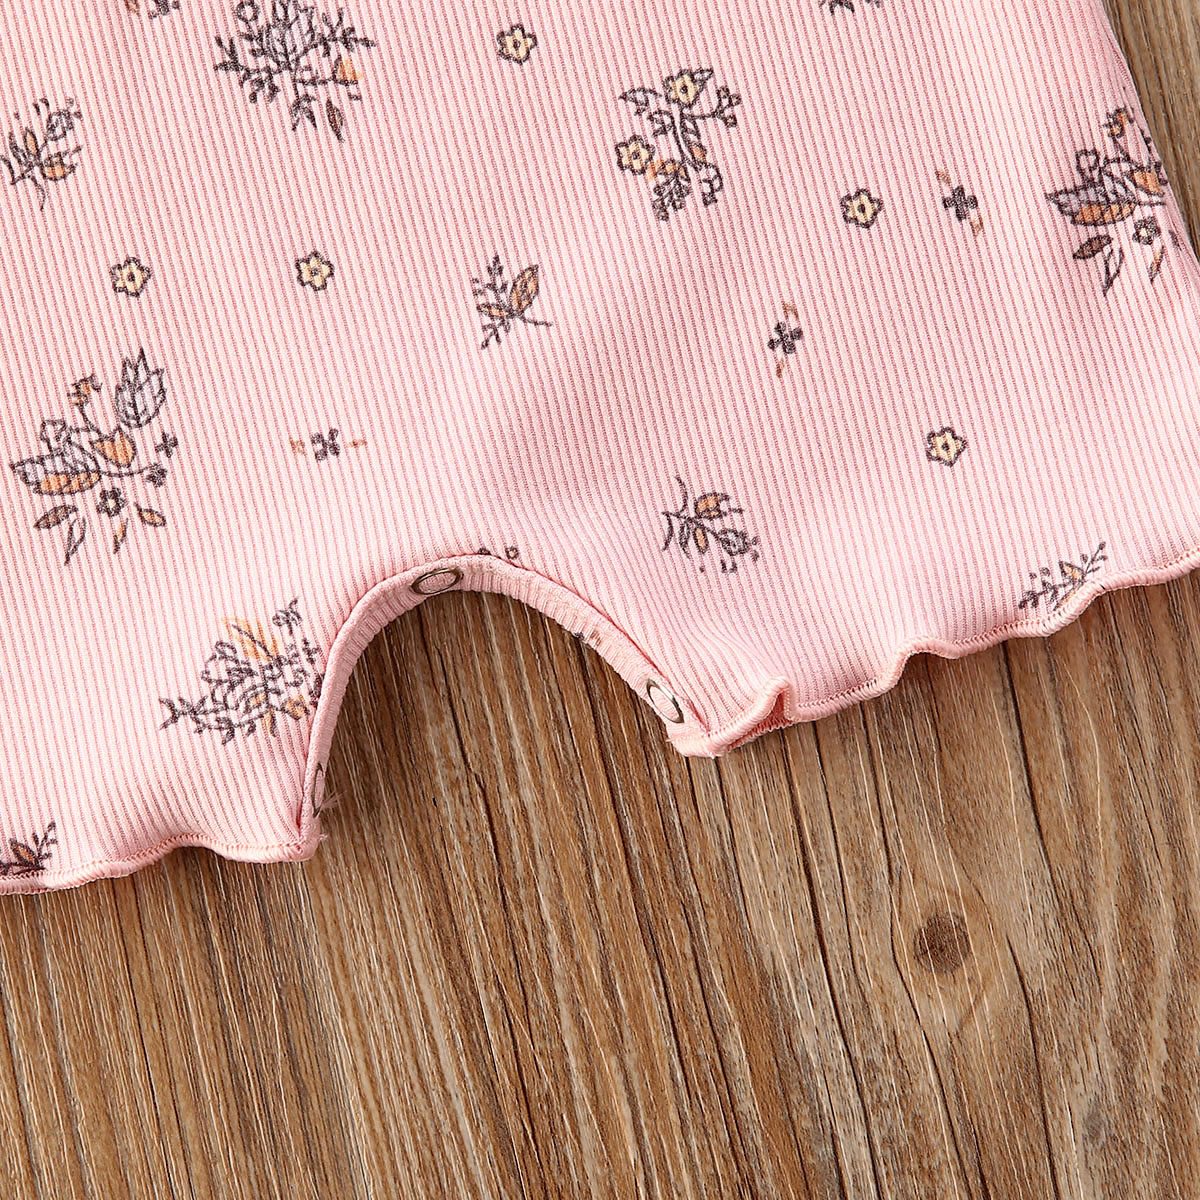 Bộ áo liền quần cotton không tay họa tiết hoa đáng yêu dành cho bé từ 0-18 tháng tuổi